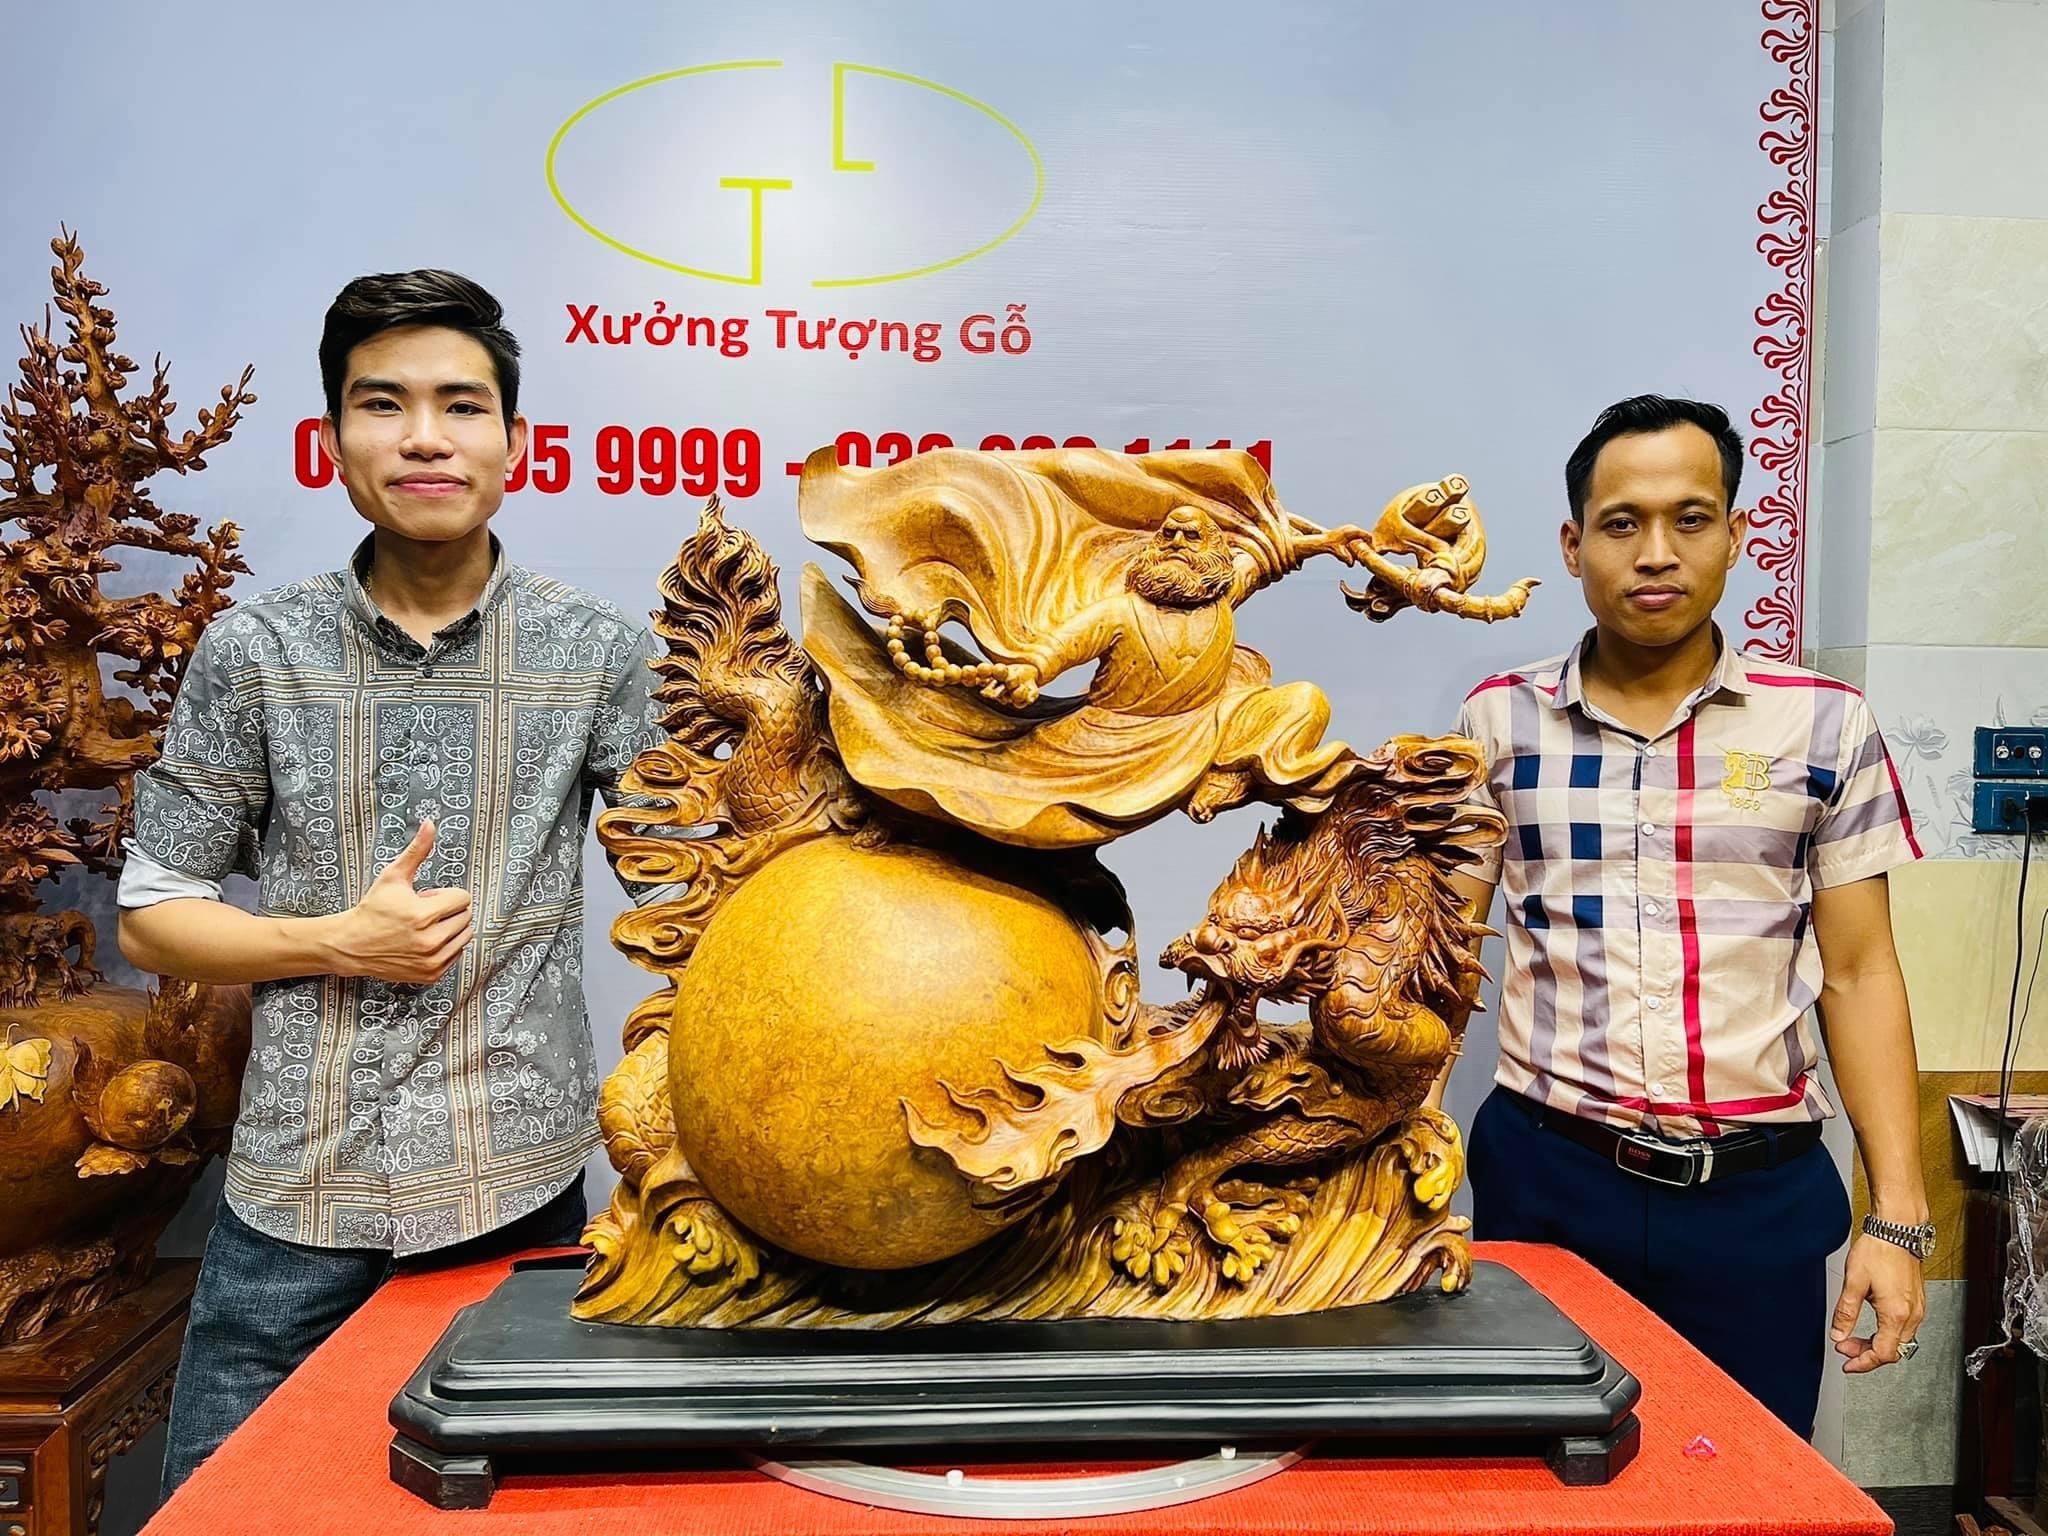 Xưởng tượng gỗ - “nét chấm phá” trong làng gỗ mỹ nghệ Việt Nam - ảnh 5